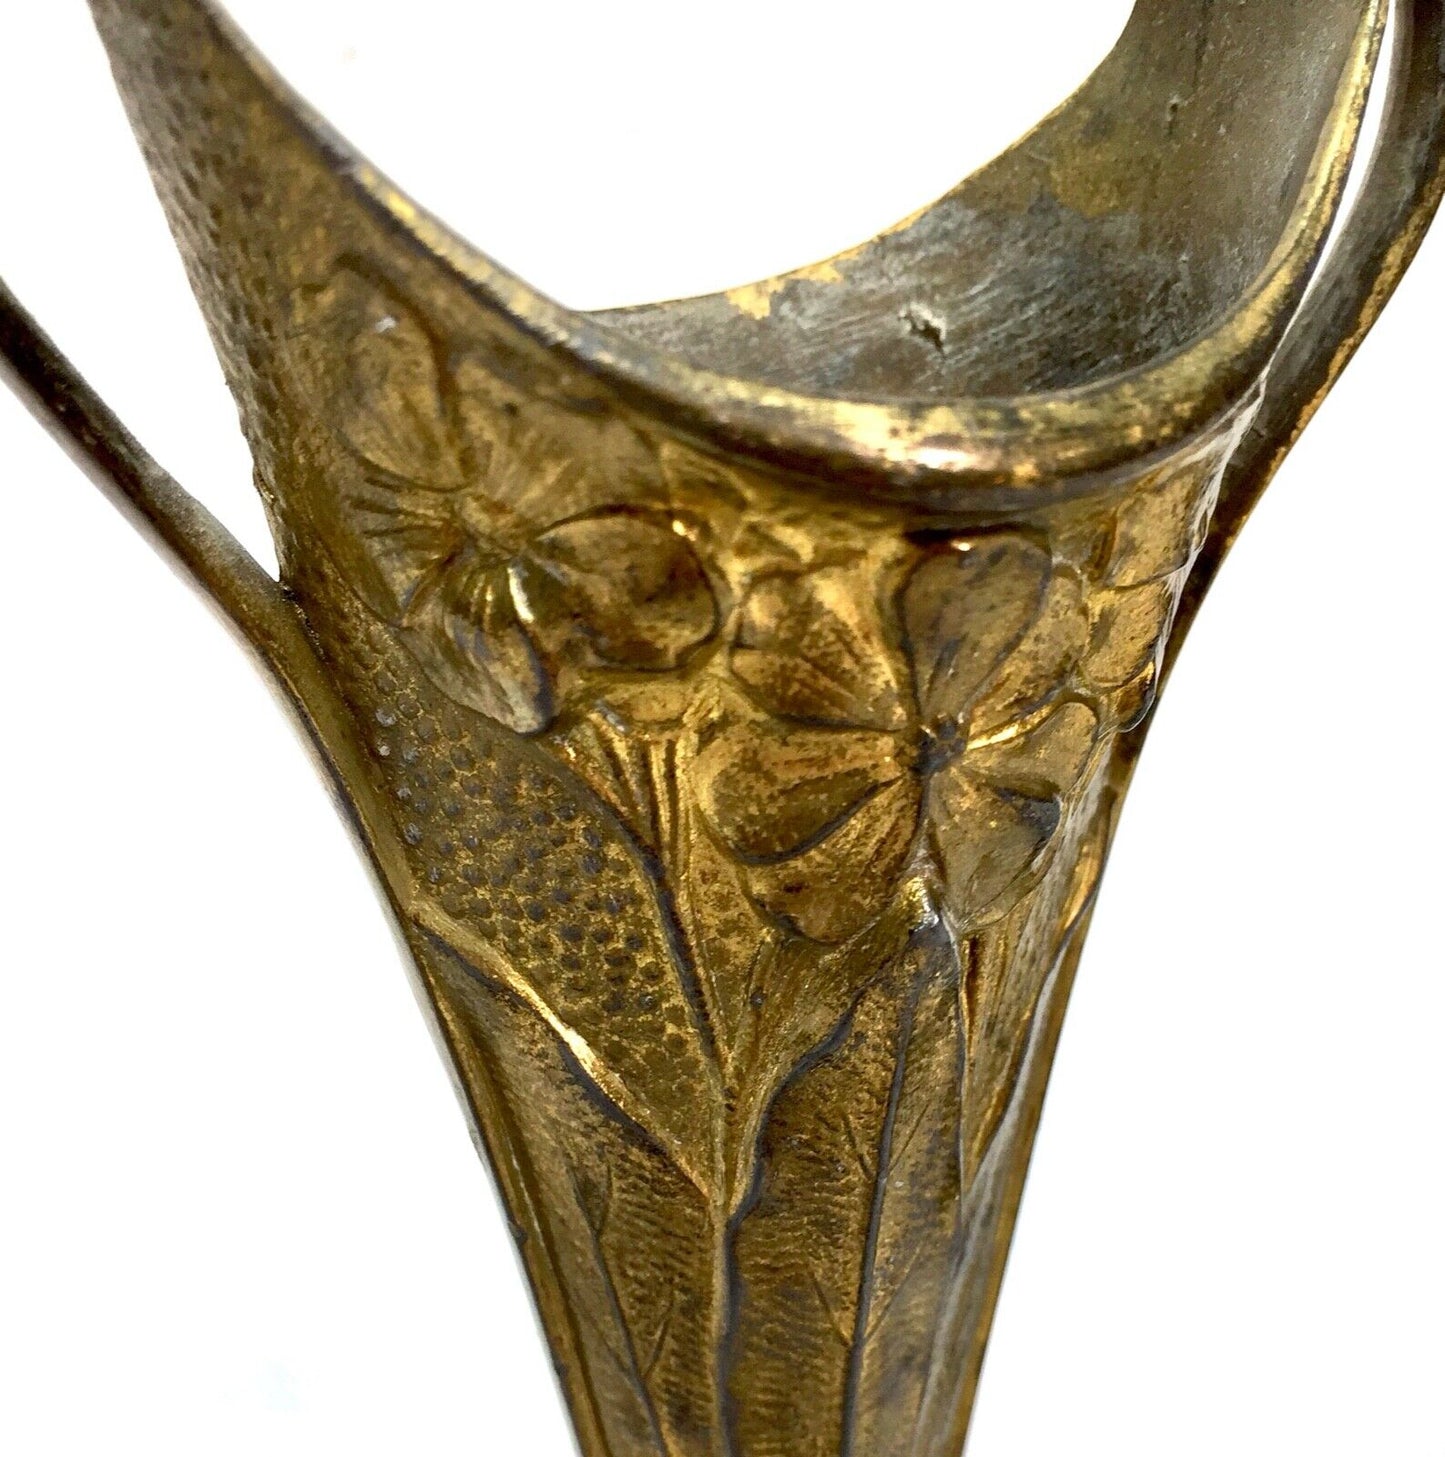 Antique Pair of Brass Art Nouveau Trumpet Posy Vases / Matching / c.1910